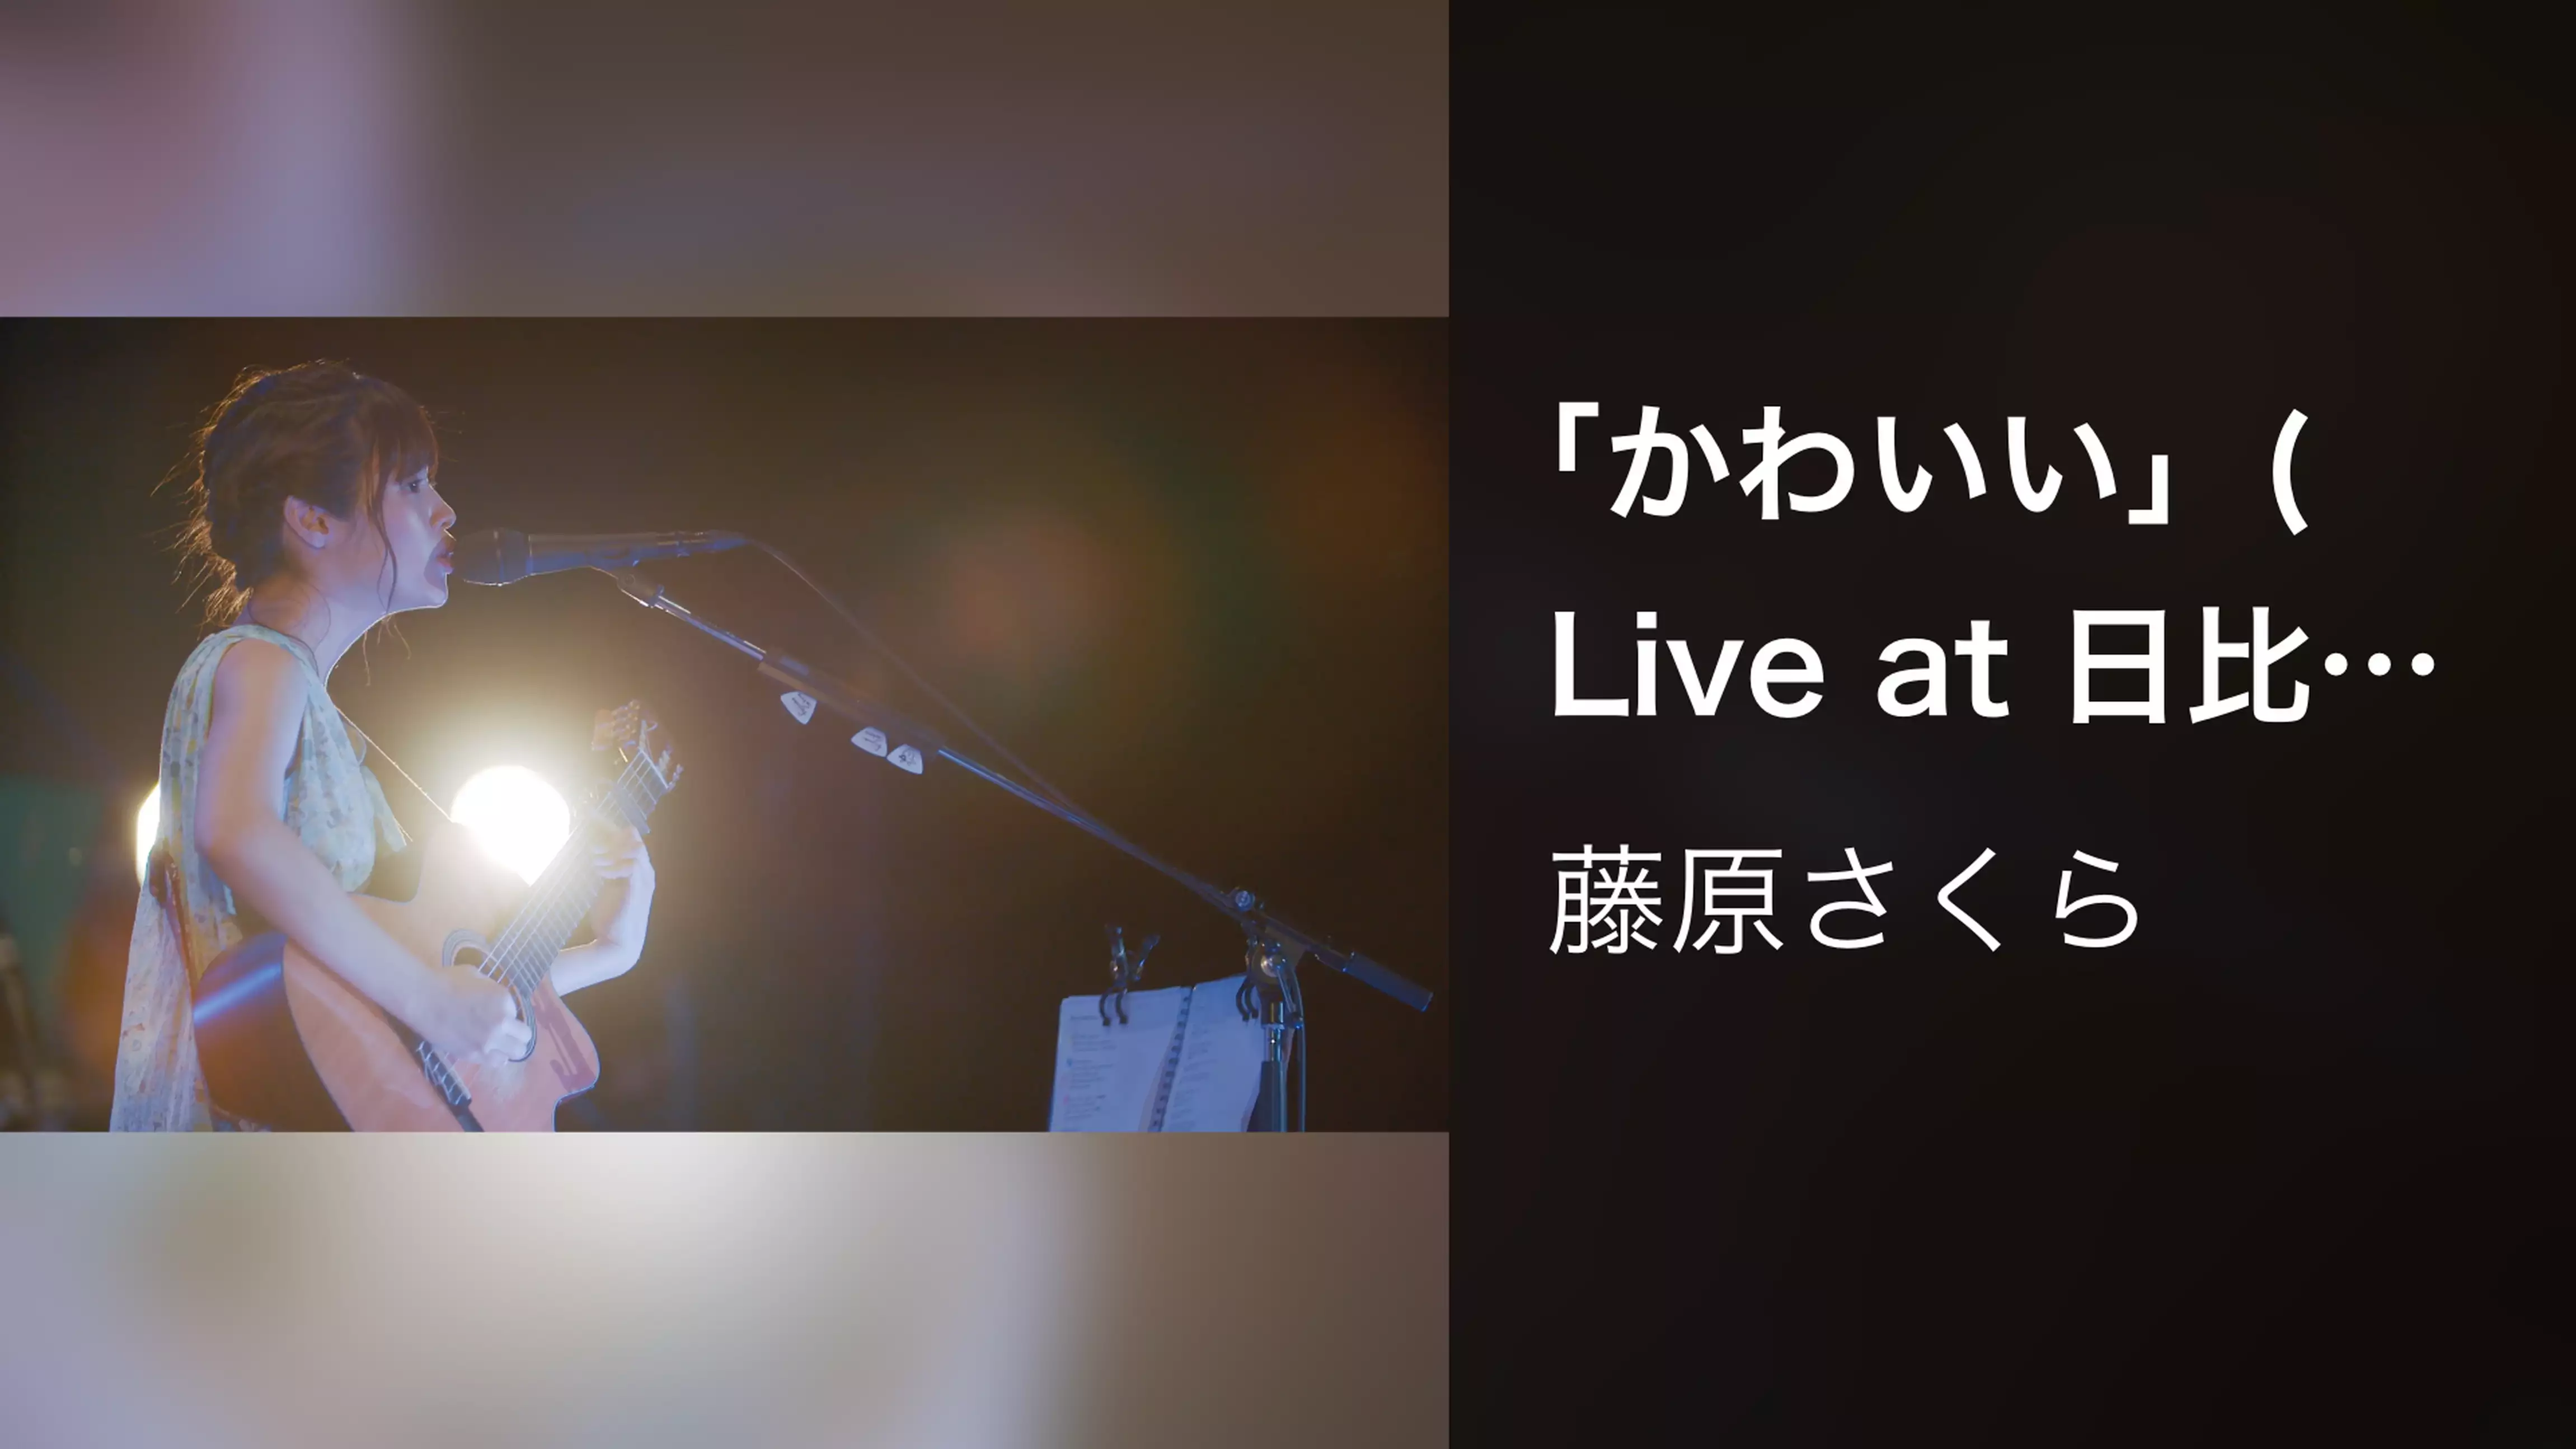 「かわいい」 (Live at 日比谷野外音楽堂, 2018年7月15日)